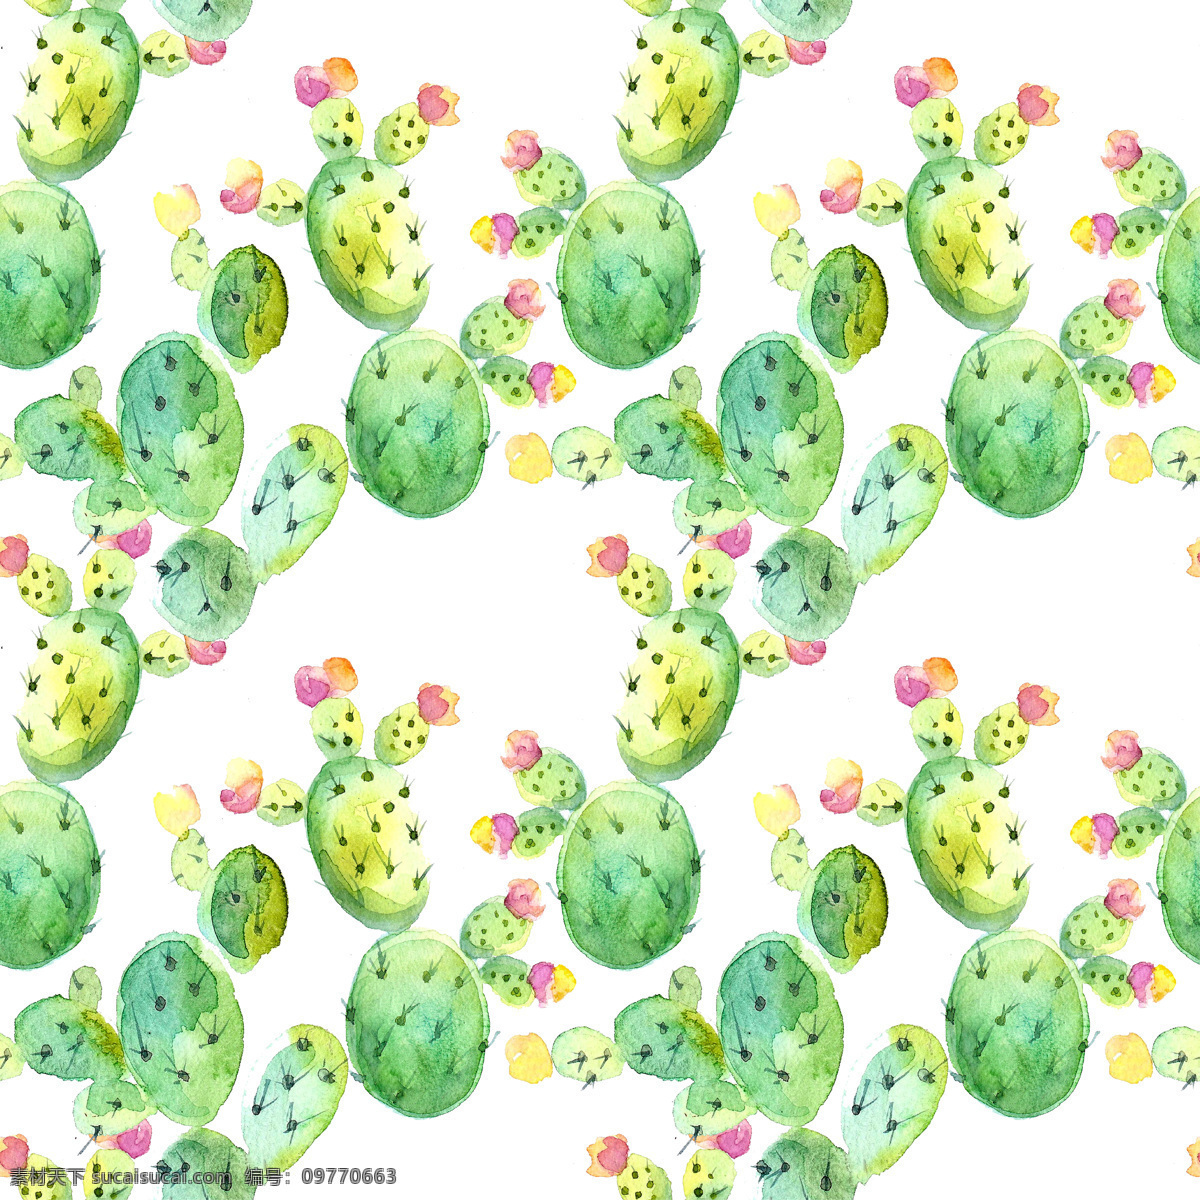 仙人球 填充 背景 植物 绿色 仙人掌 背景素材 填充背景 唯美图案